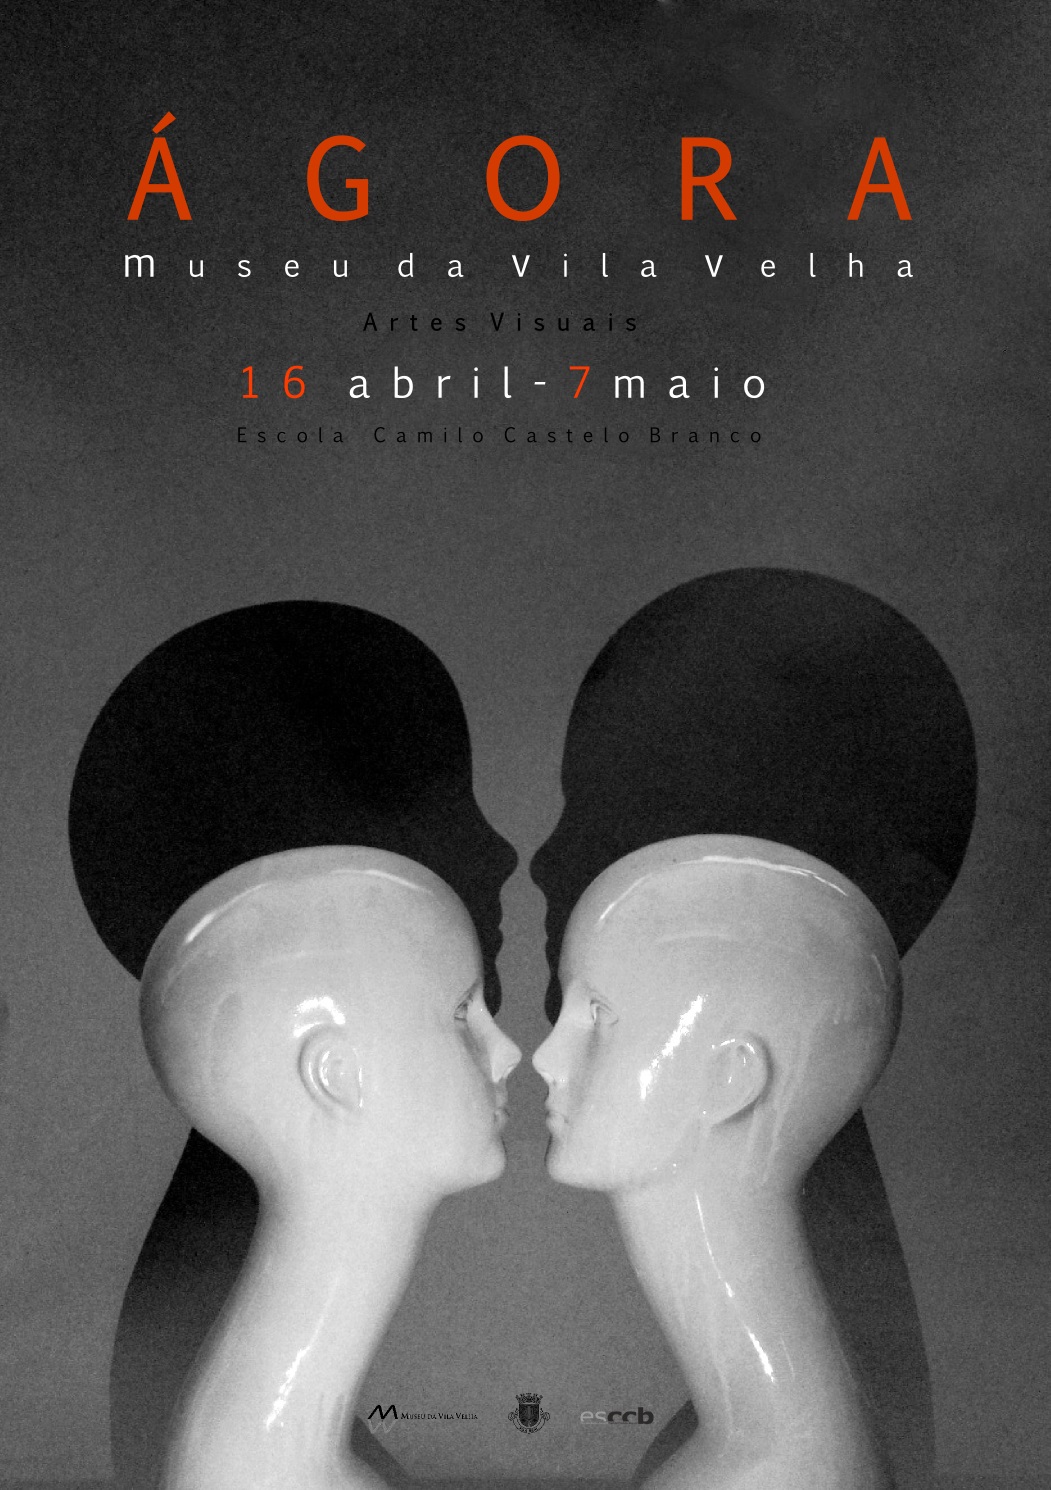 Museu da Vila Velha | Exposição de trabalhos artísticos “Ágora" 2015